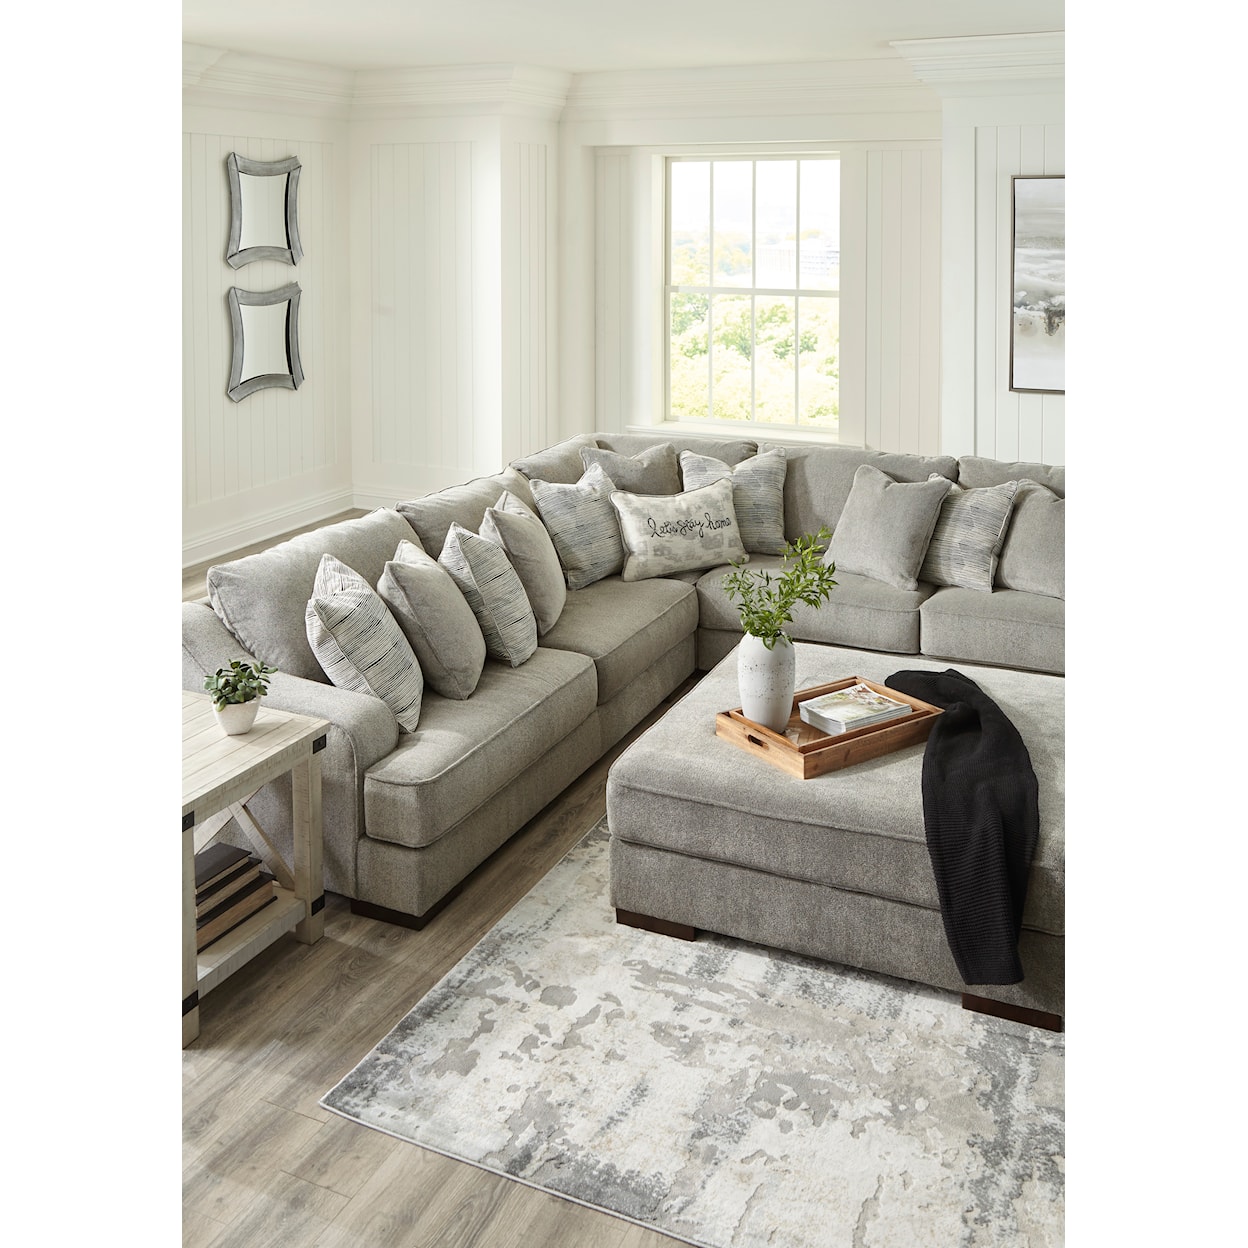 Signature Design Bayless 3-Piece Sectional Sofa